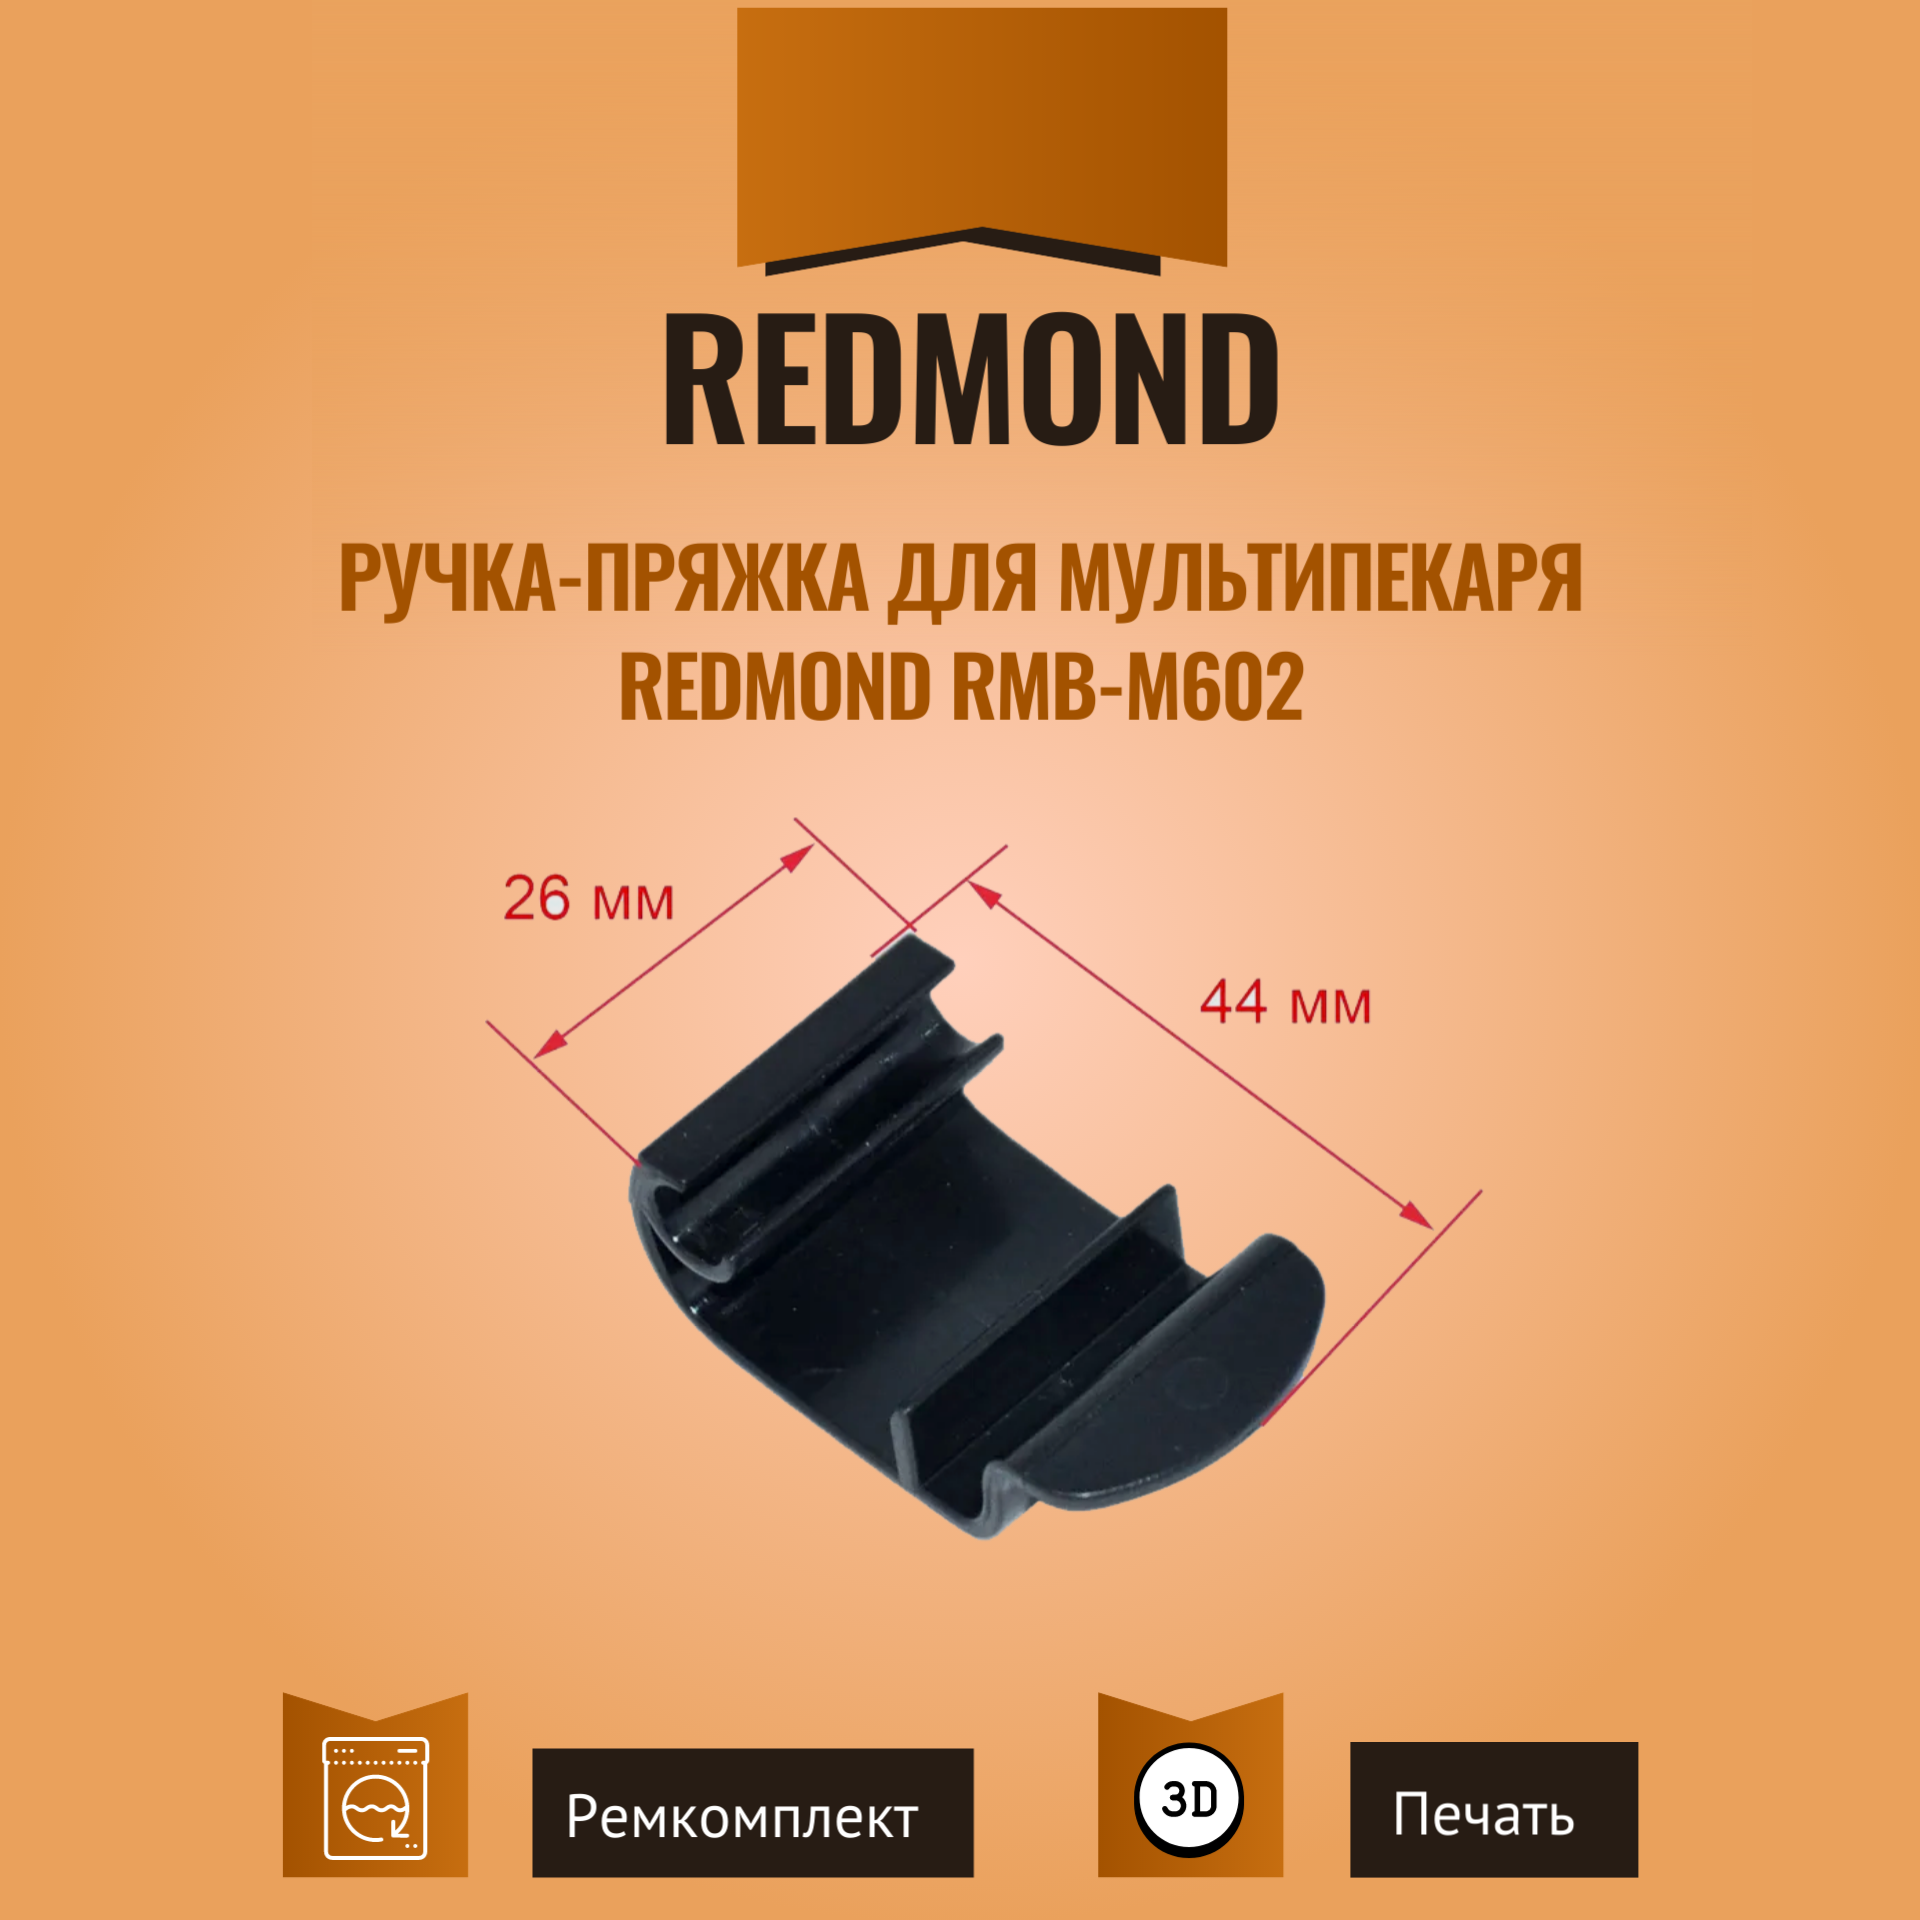 Ручка-пряжка для мультипекаря REDMOND RMB-M602